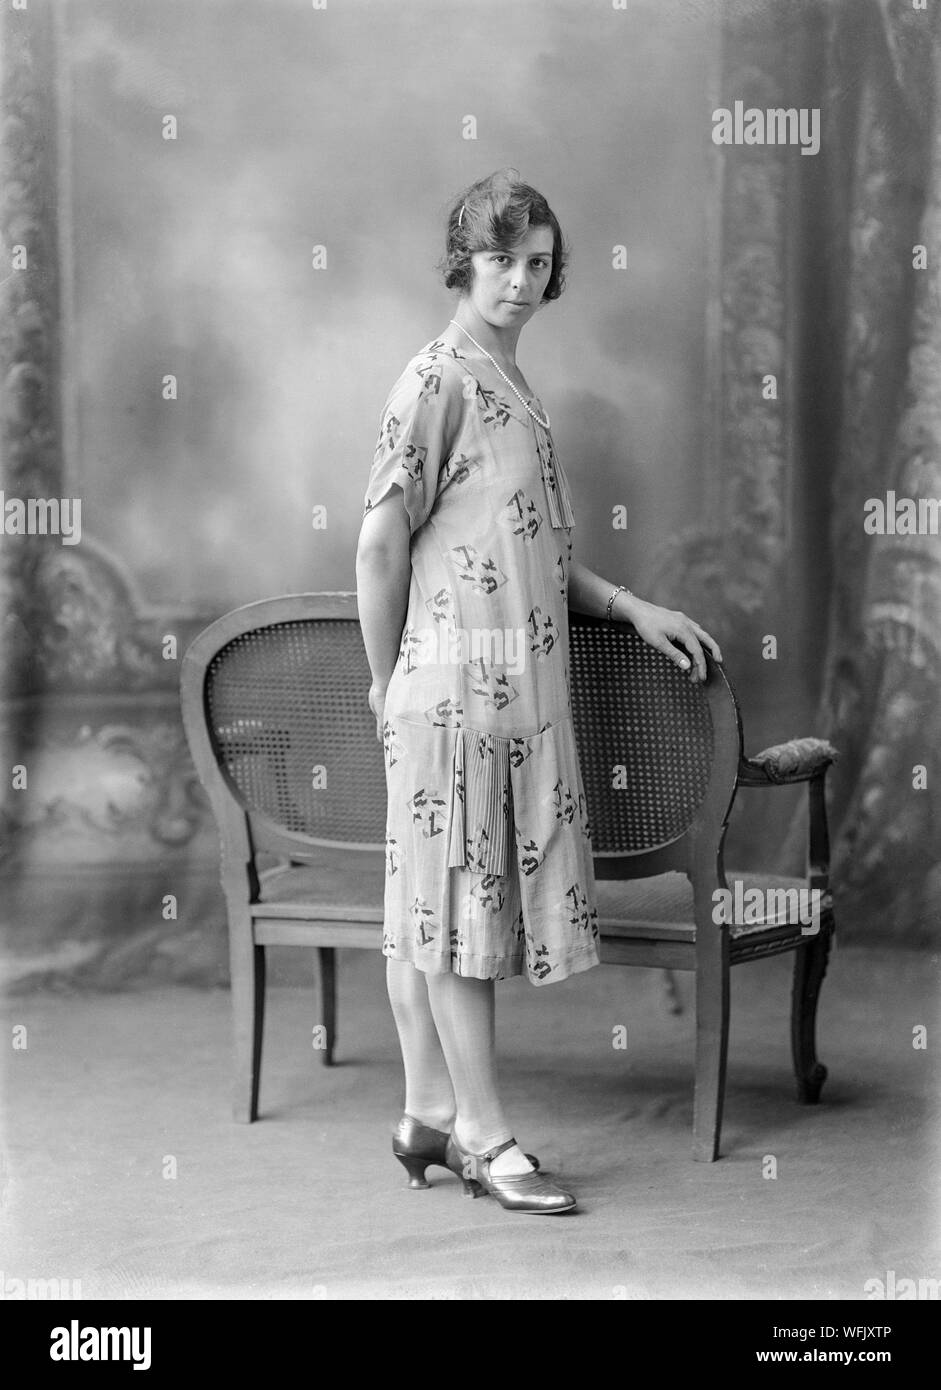 A principios del siglo xx en blanco y negro vintage fotografía, tomada en  un estudio fotográfico, mostrando una mujer joven en un traje típico de la  moda de la época, posando para